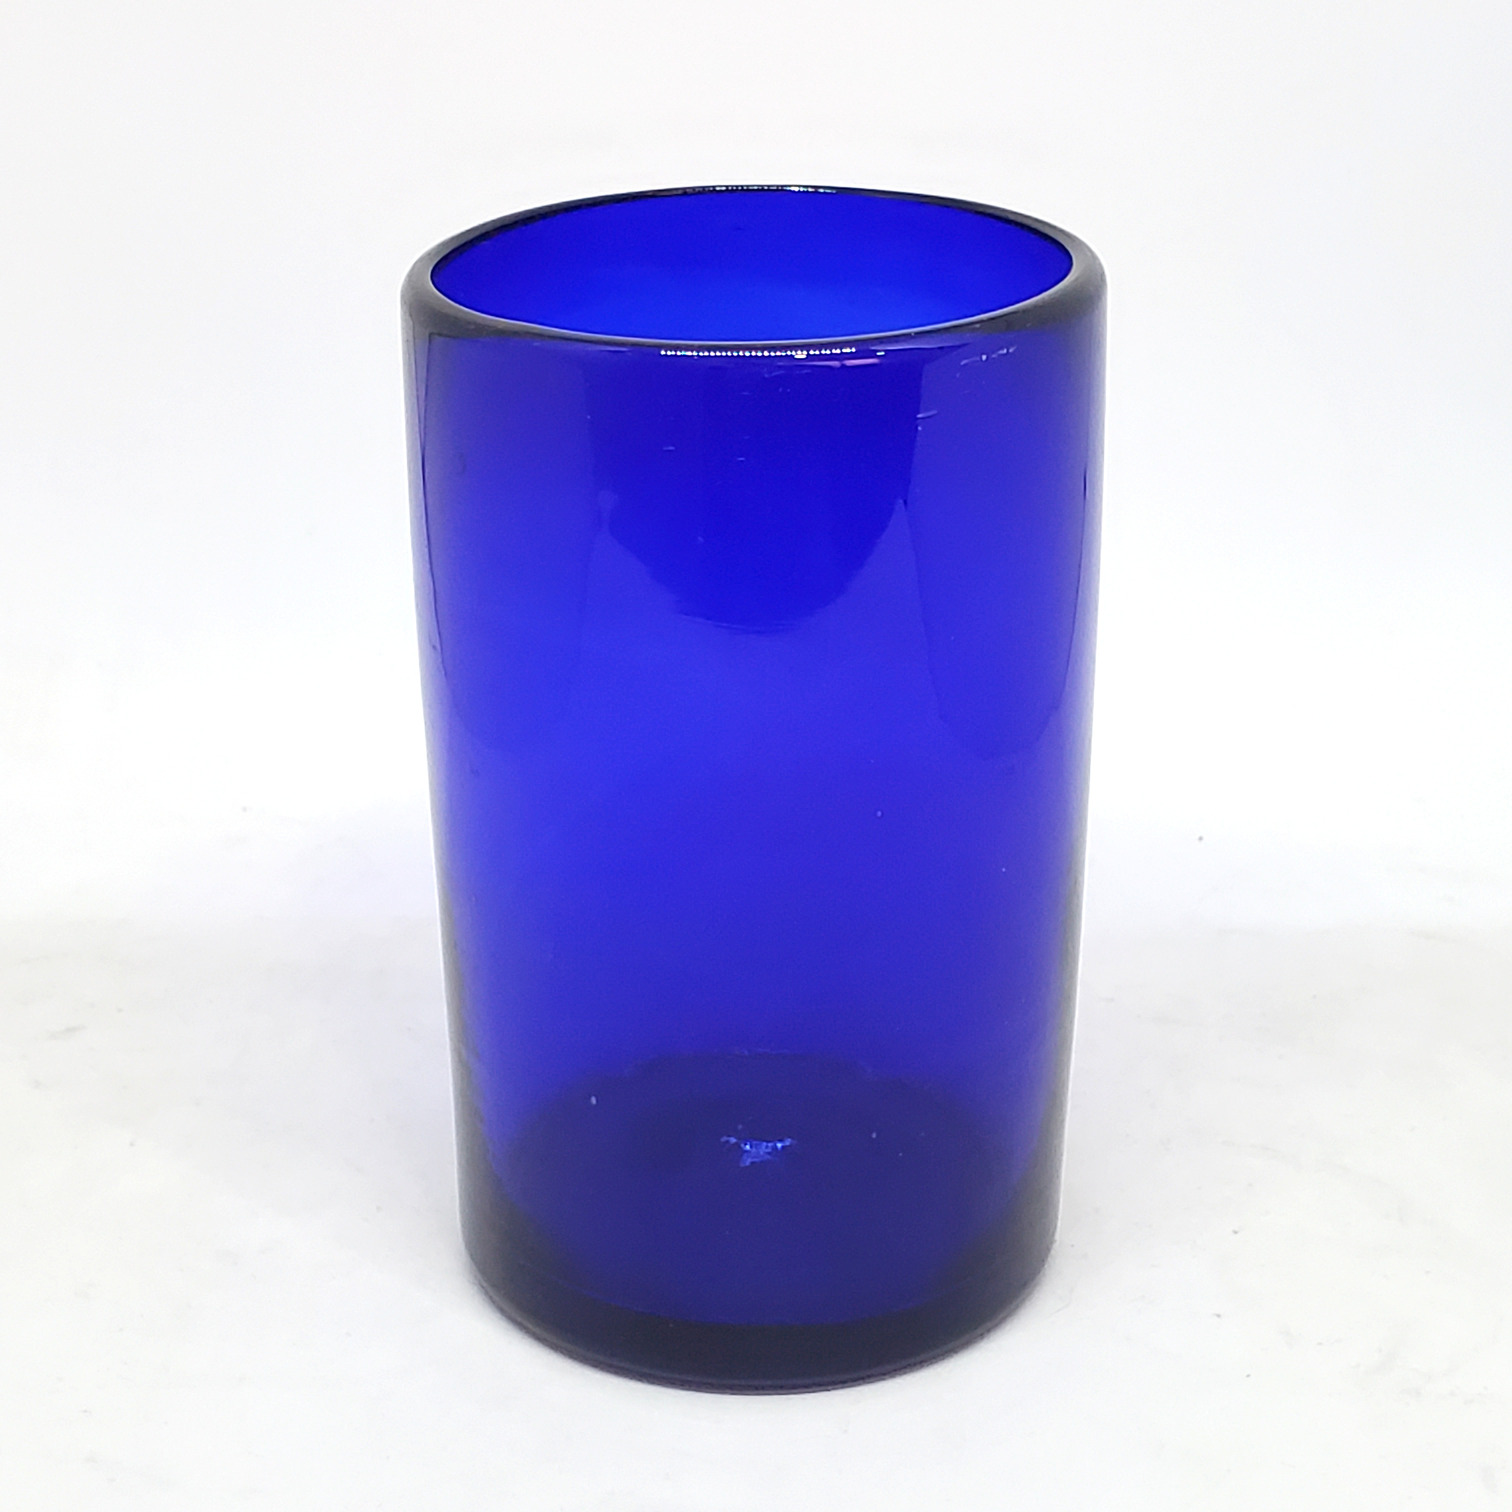 VIDRIO SOPLADO / vasos grandes color azul cobalto, 14 oz, Vidrio Reciclado, Libre de Plomo y Toxinas